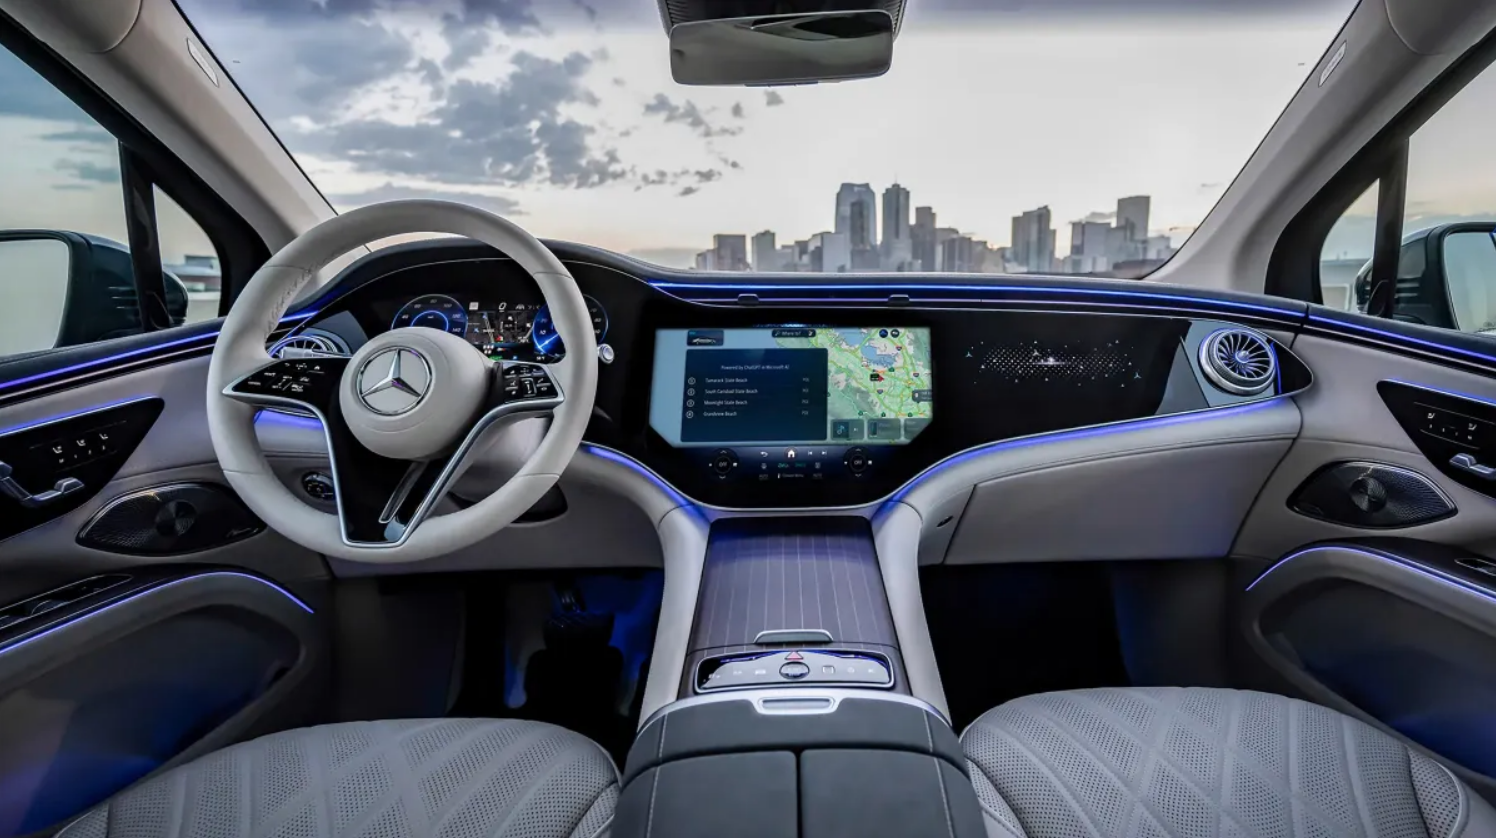 Mercedes Benz utiliza ChatGPT para llevar el control por voz a un nuevo nivel